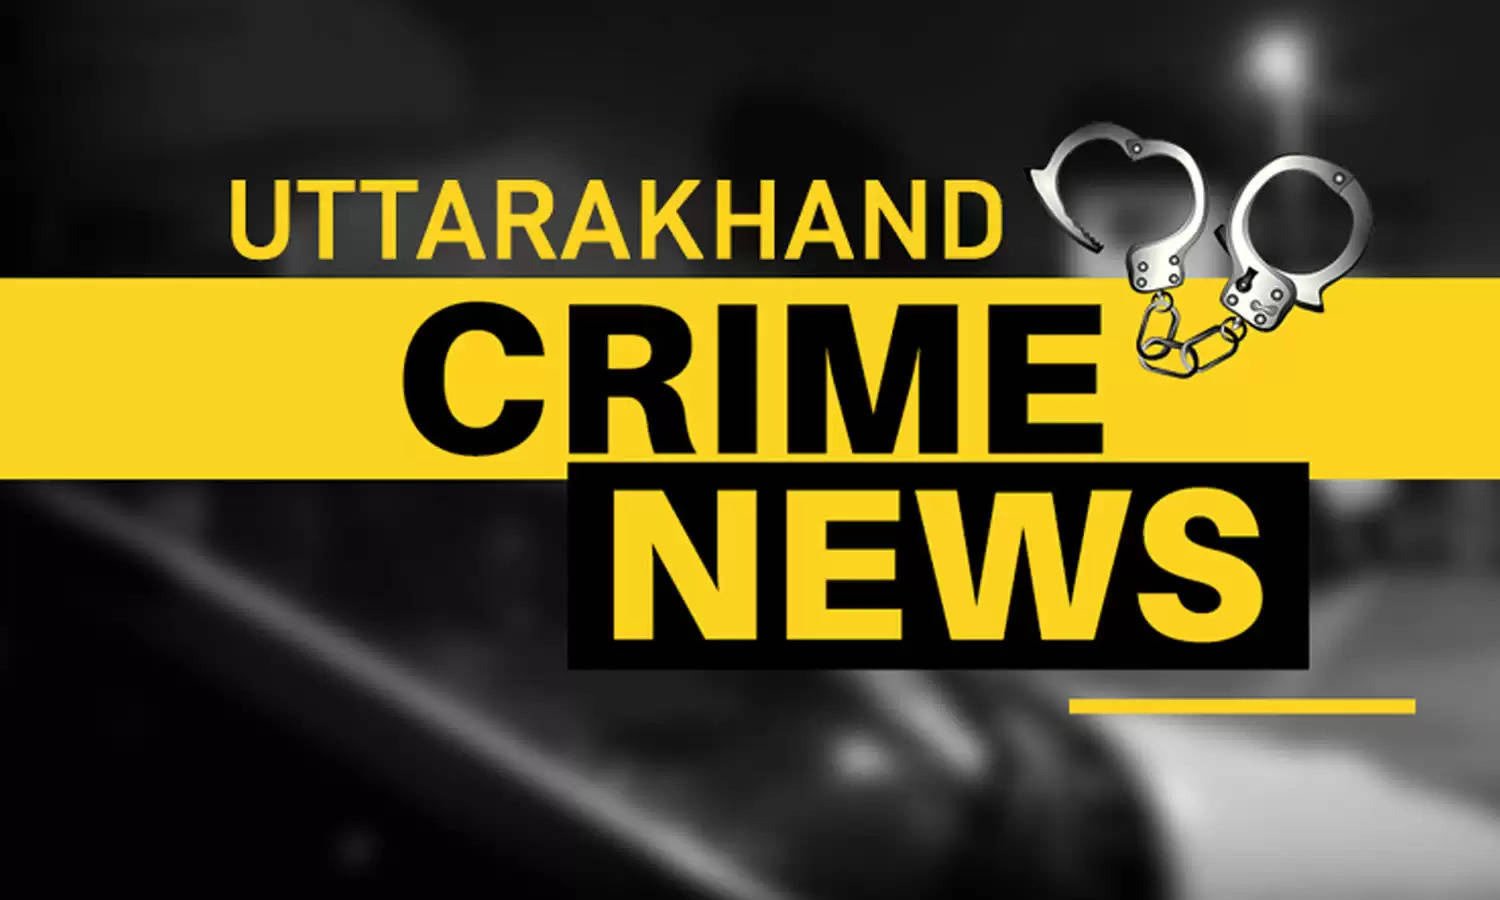 Uttarakhand Crime : पत्नी को छोड़ने आगरा गए कर्मचारी के बंद घर में हुई चोरी